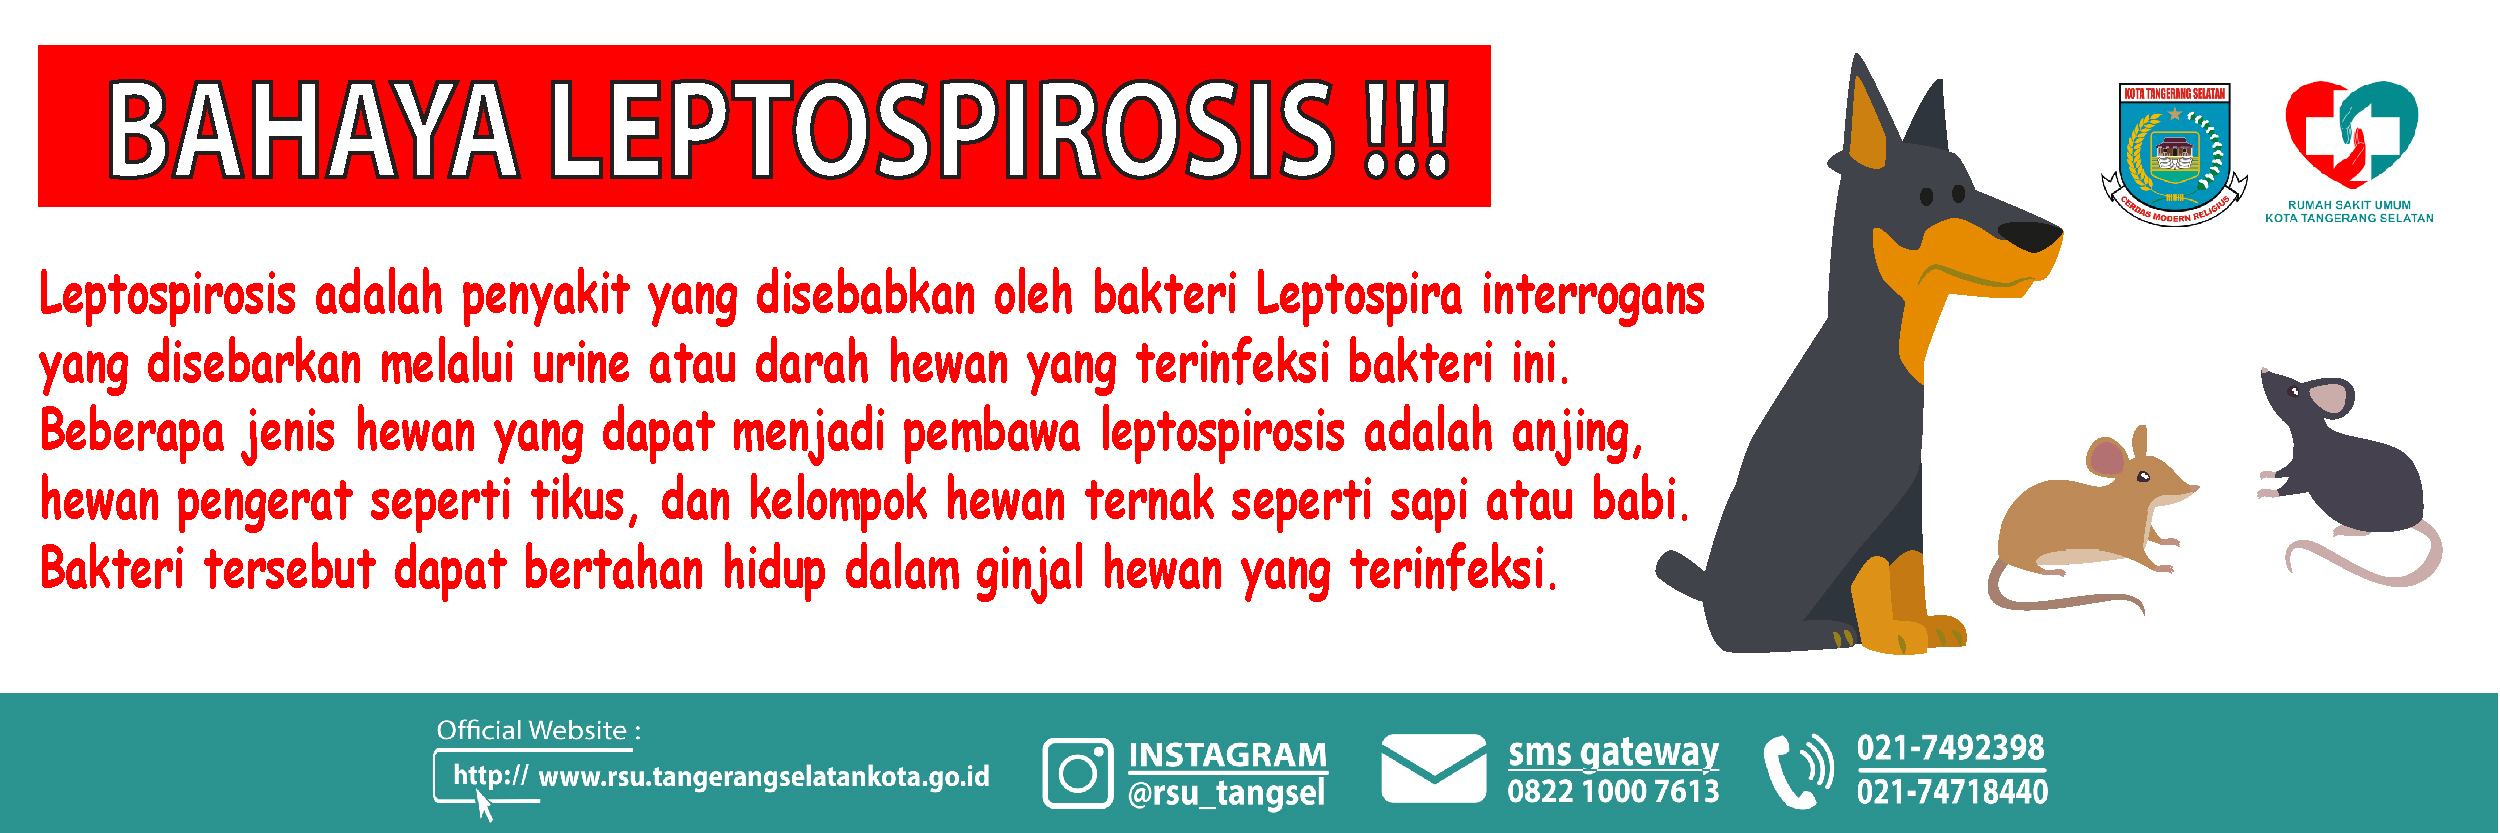 Bahaya Leptospirosis Di Lingkungan Sekitar Kita !